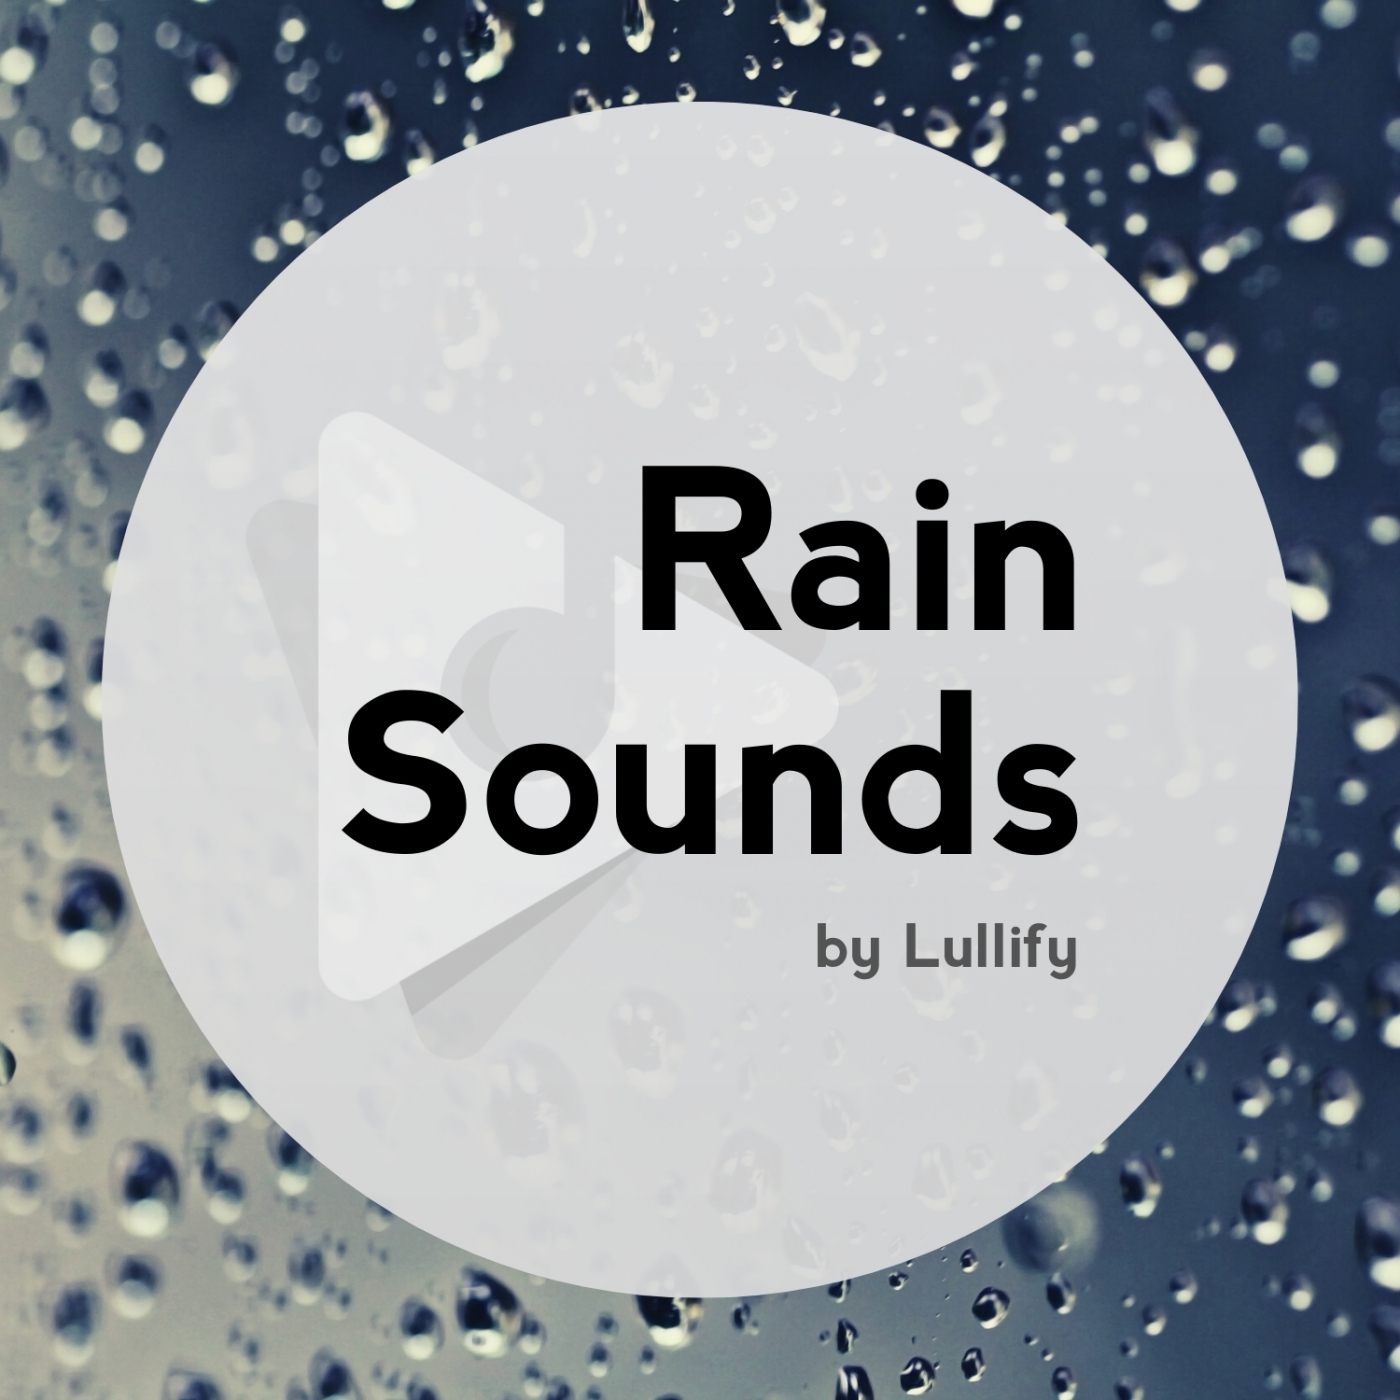 Rain Sounds by Lullify